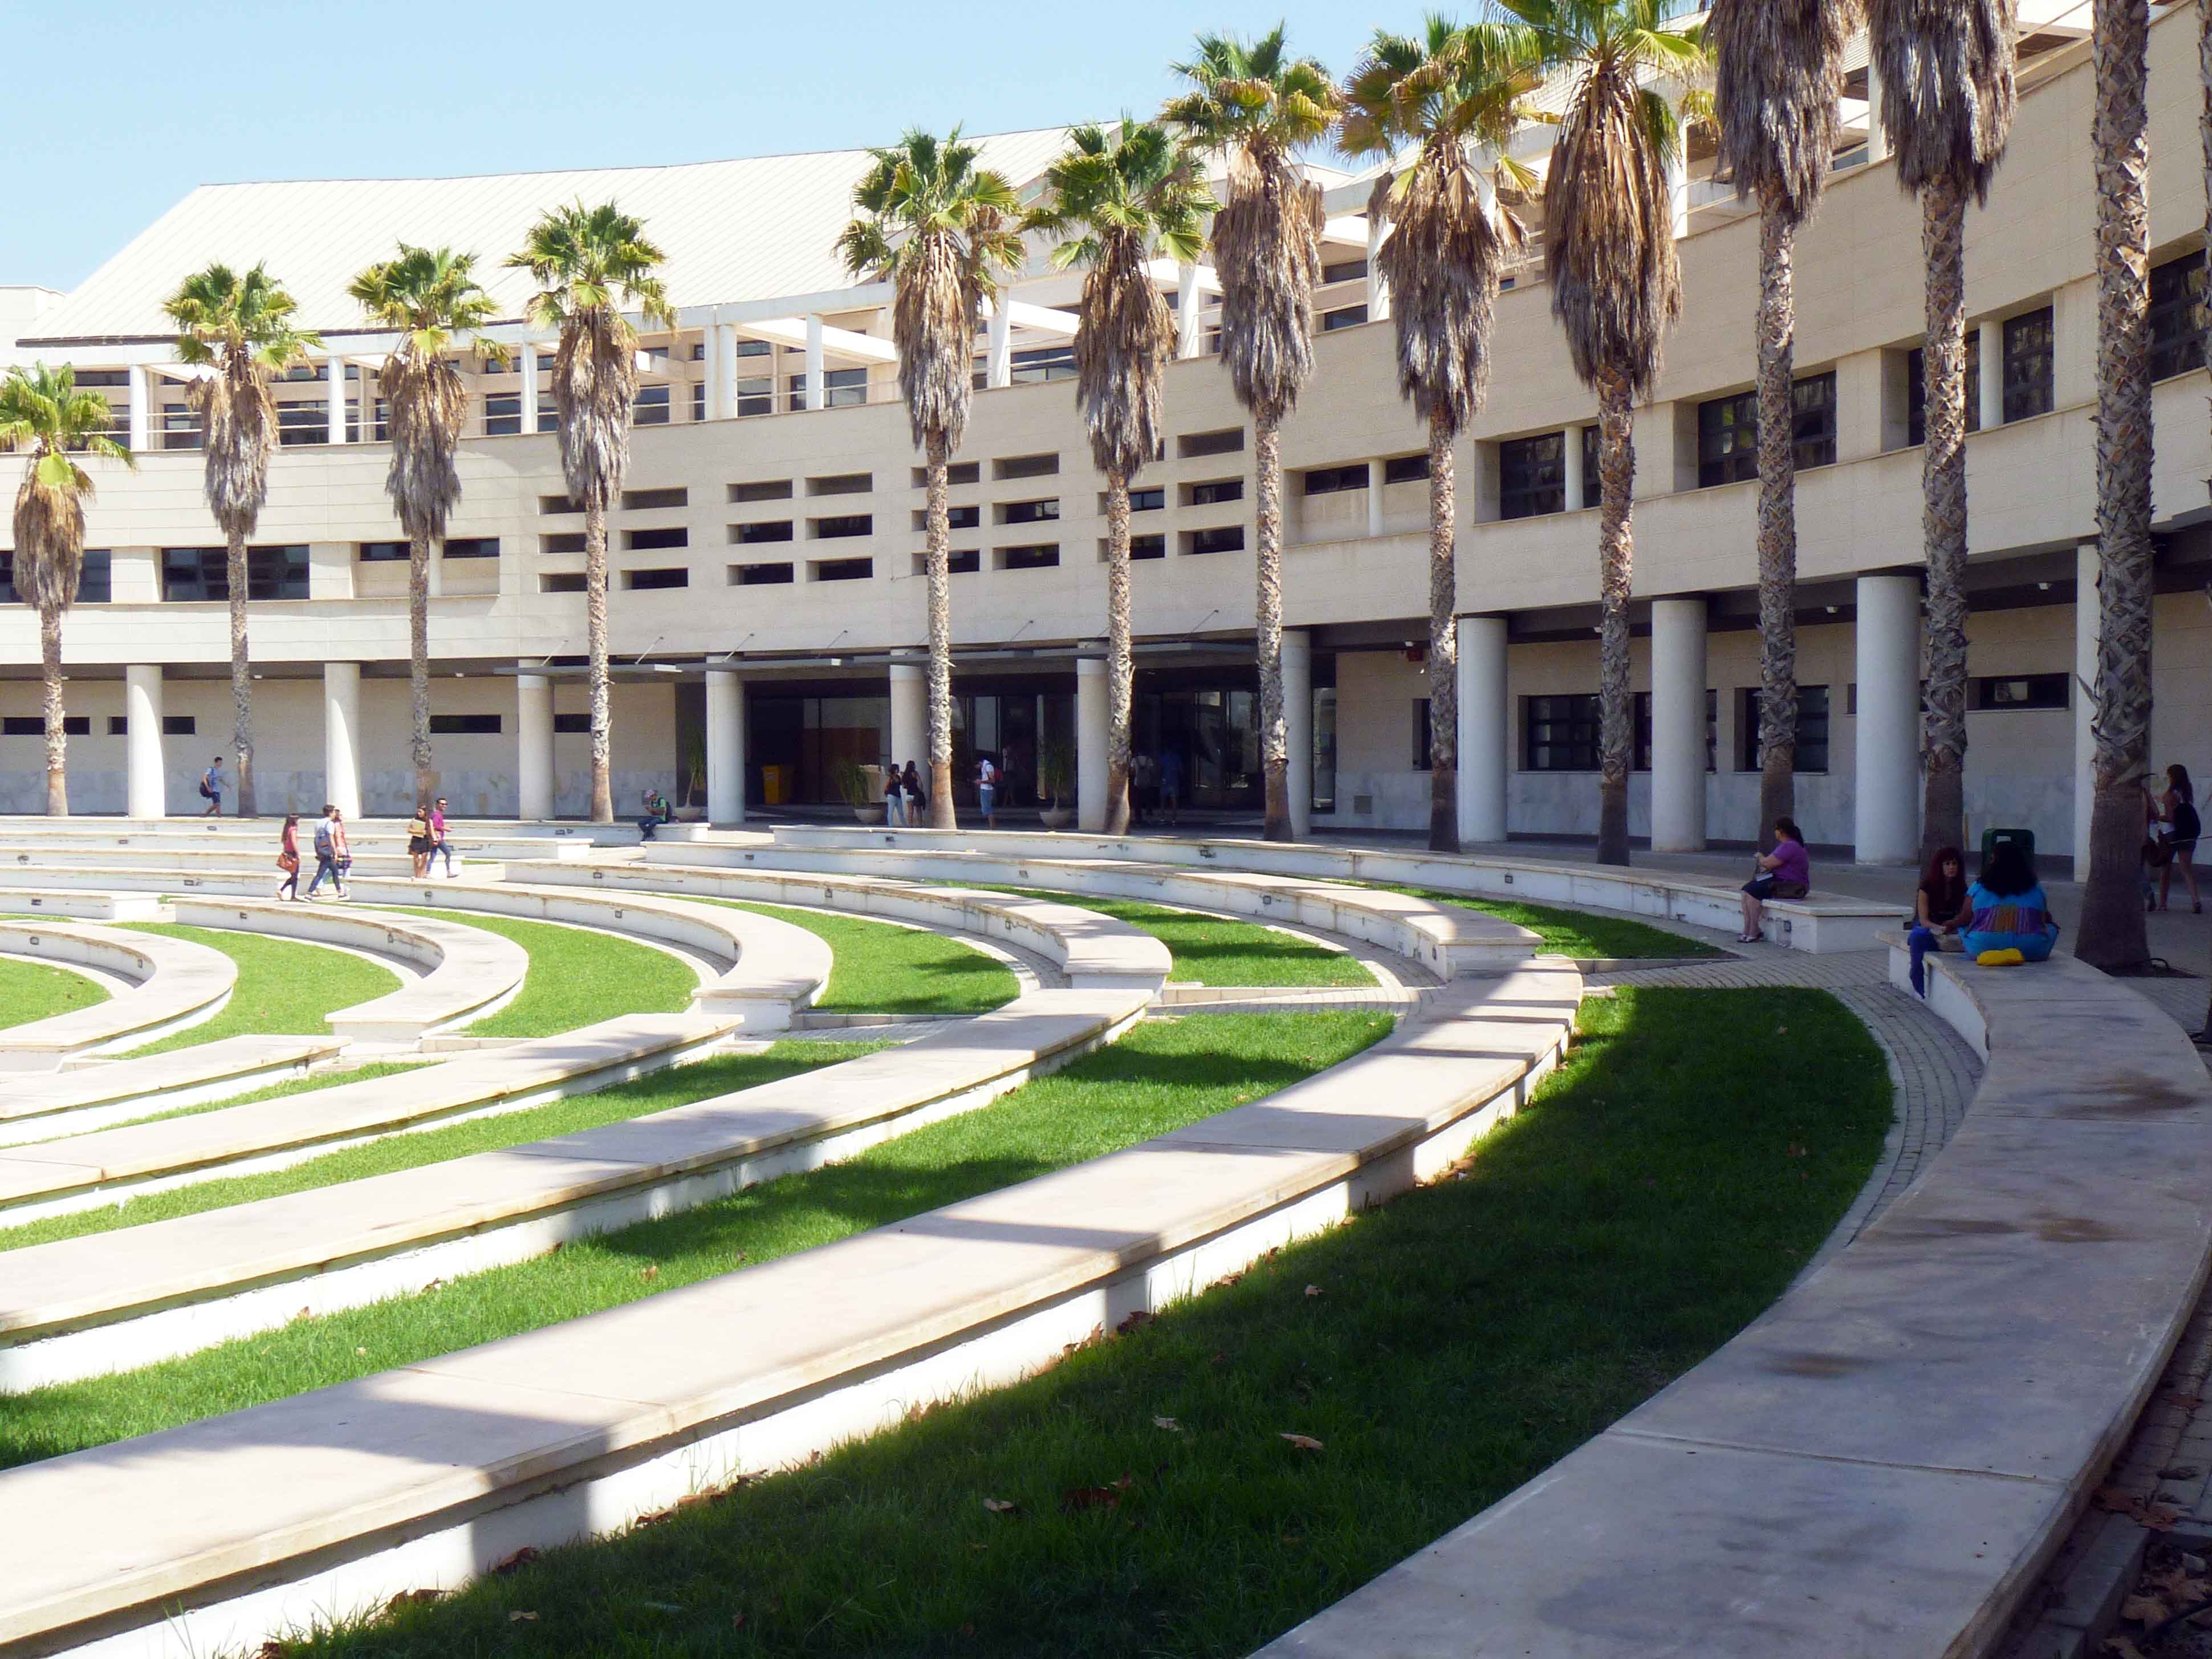 University of Alicante campus building in Alicante, Spain.